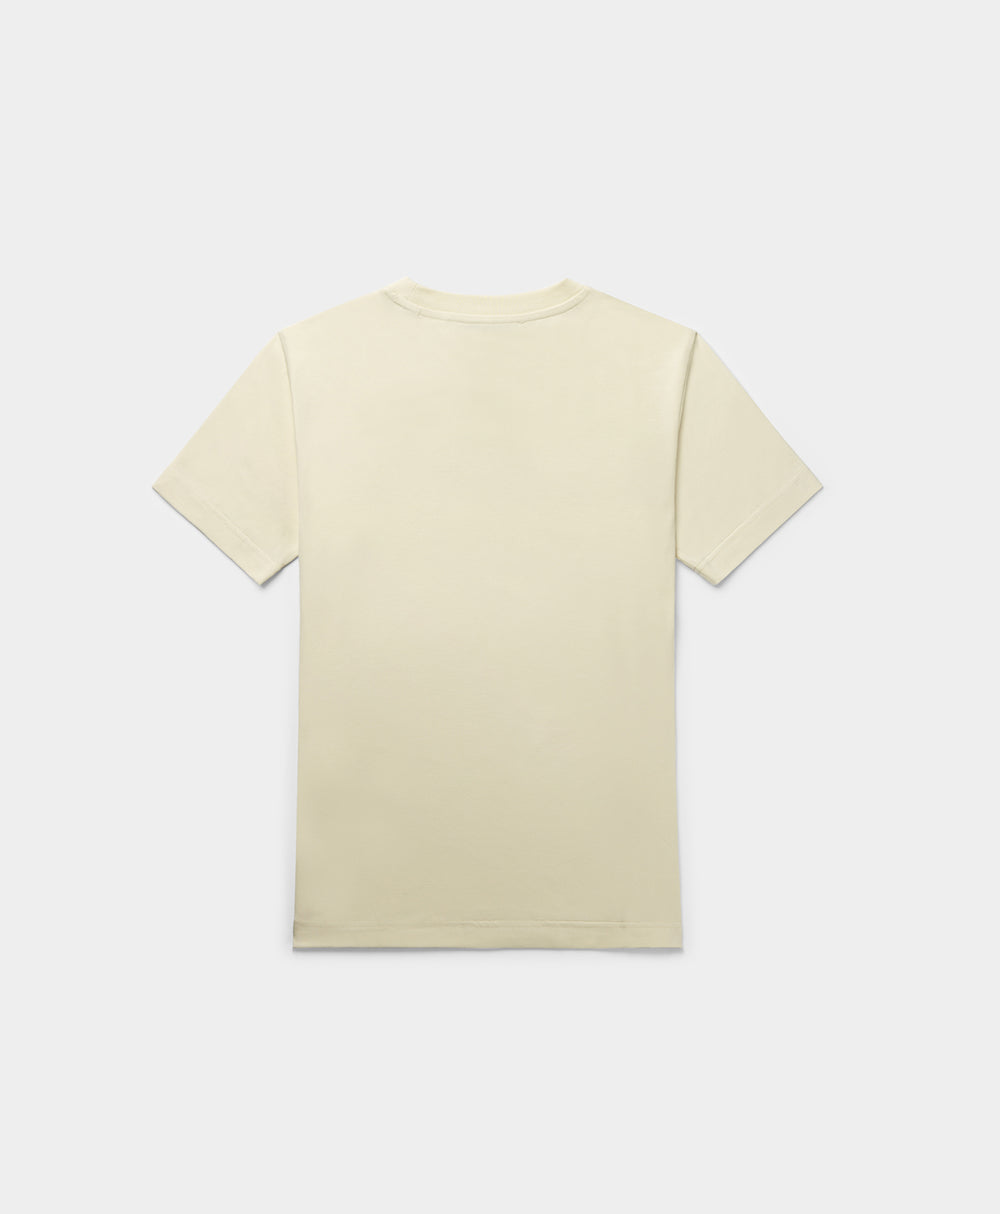 DP - Birch White Emefa T-Shirt - Packshot - Rear